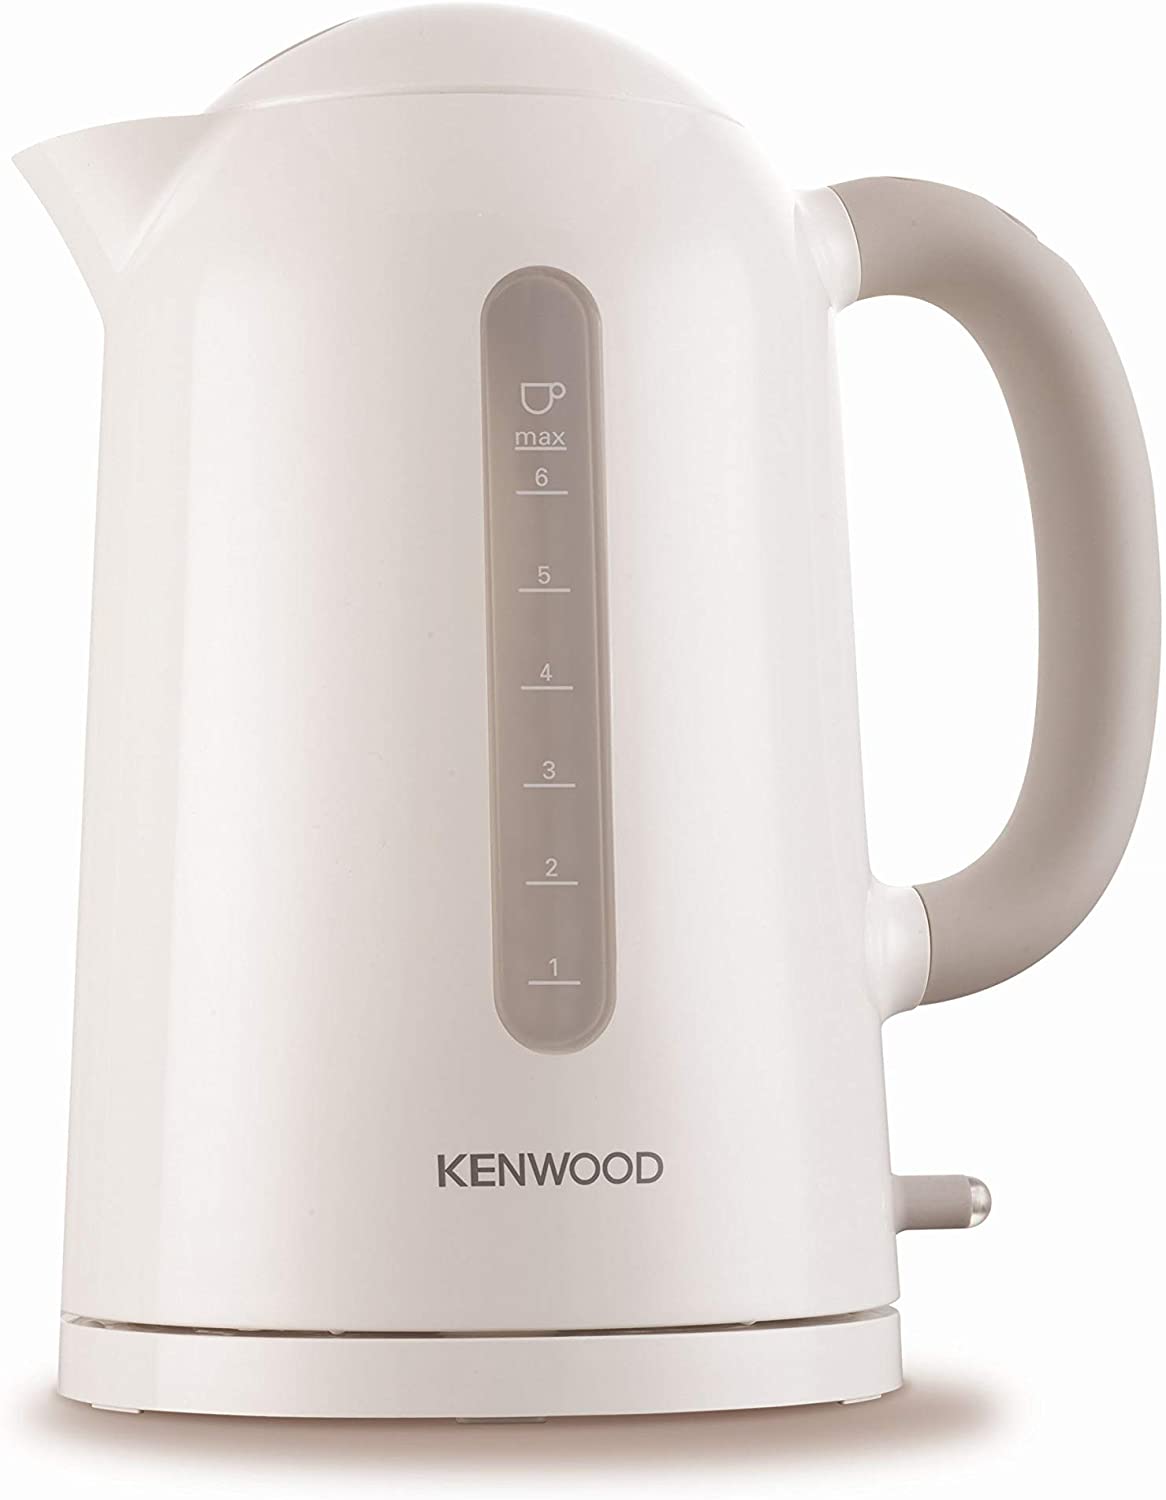 DeLonghi Kenwood JKP 230 True kettle/1.6 liter/2200 watts/flip-top lid/white